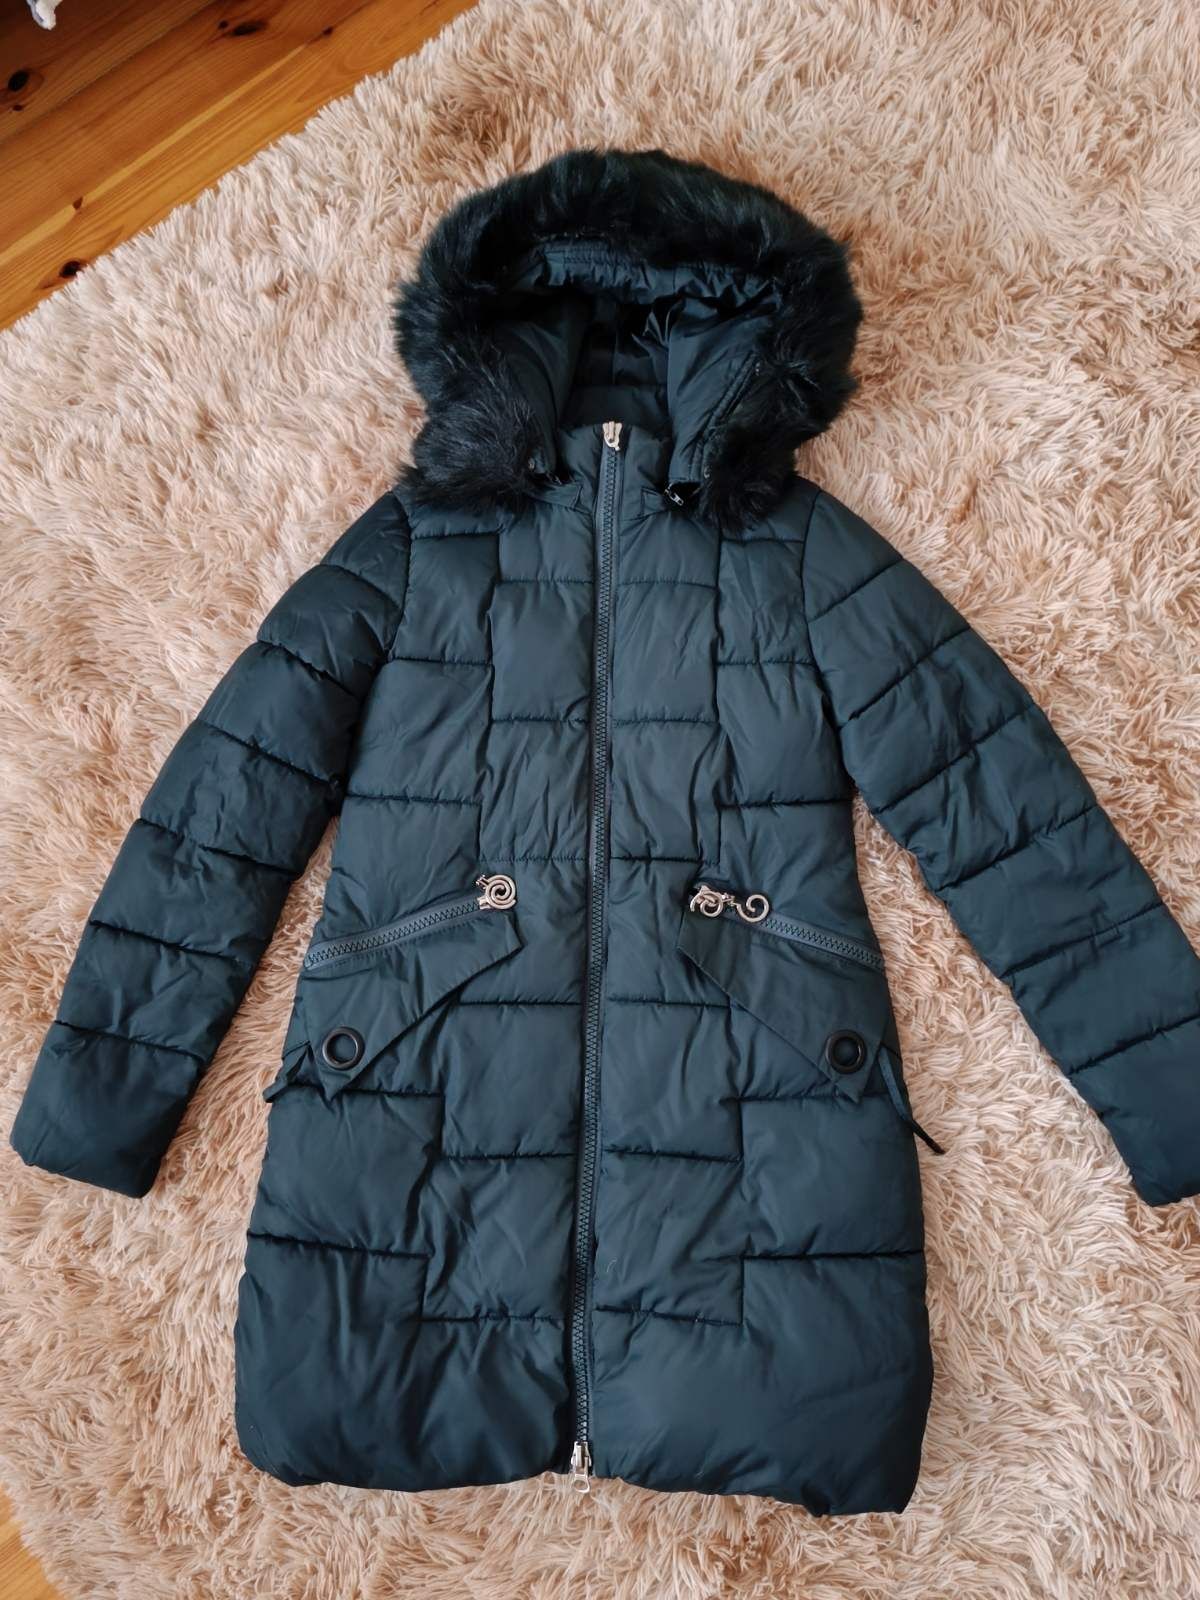 Пуховик куртка пальто зима зимняя